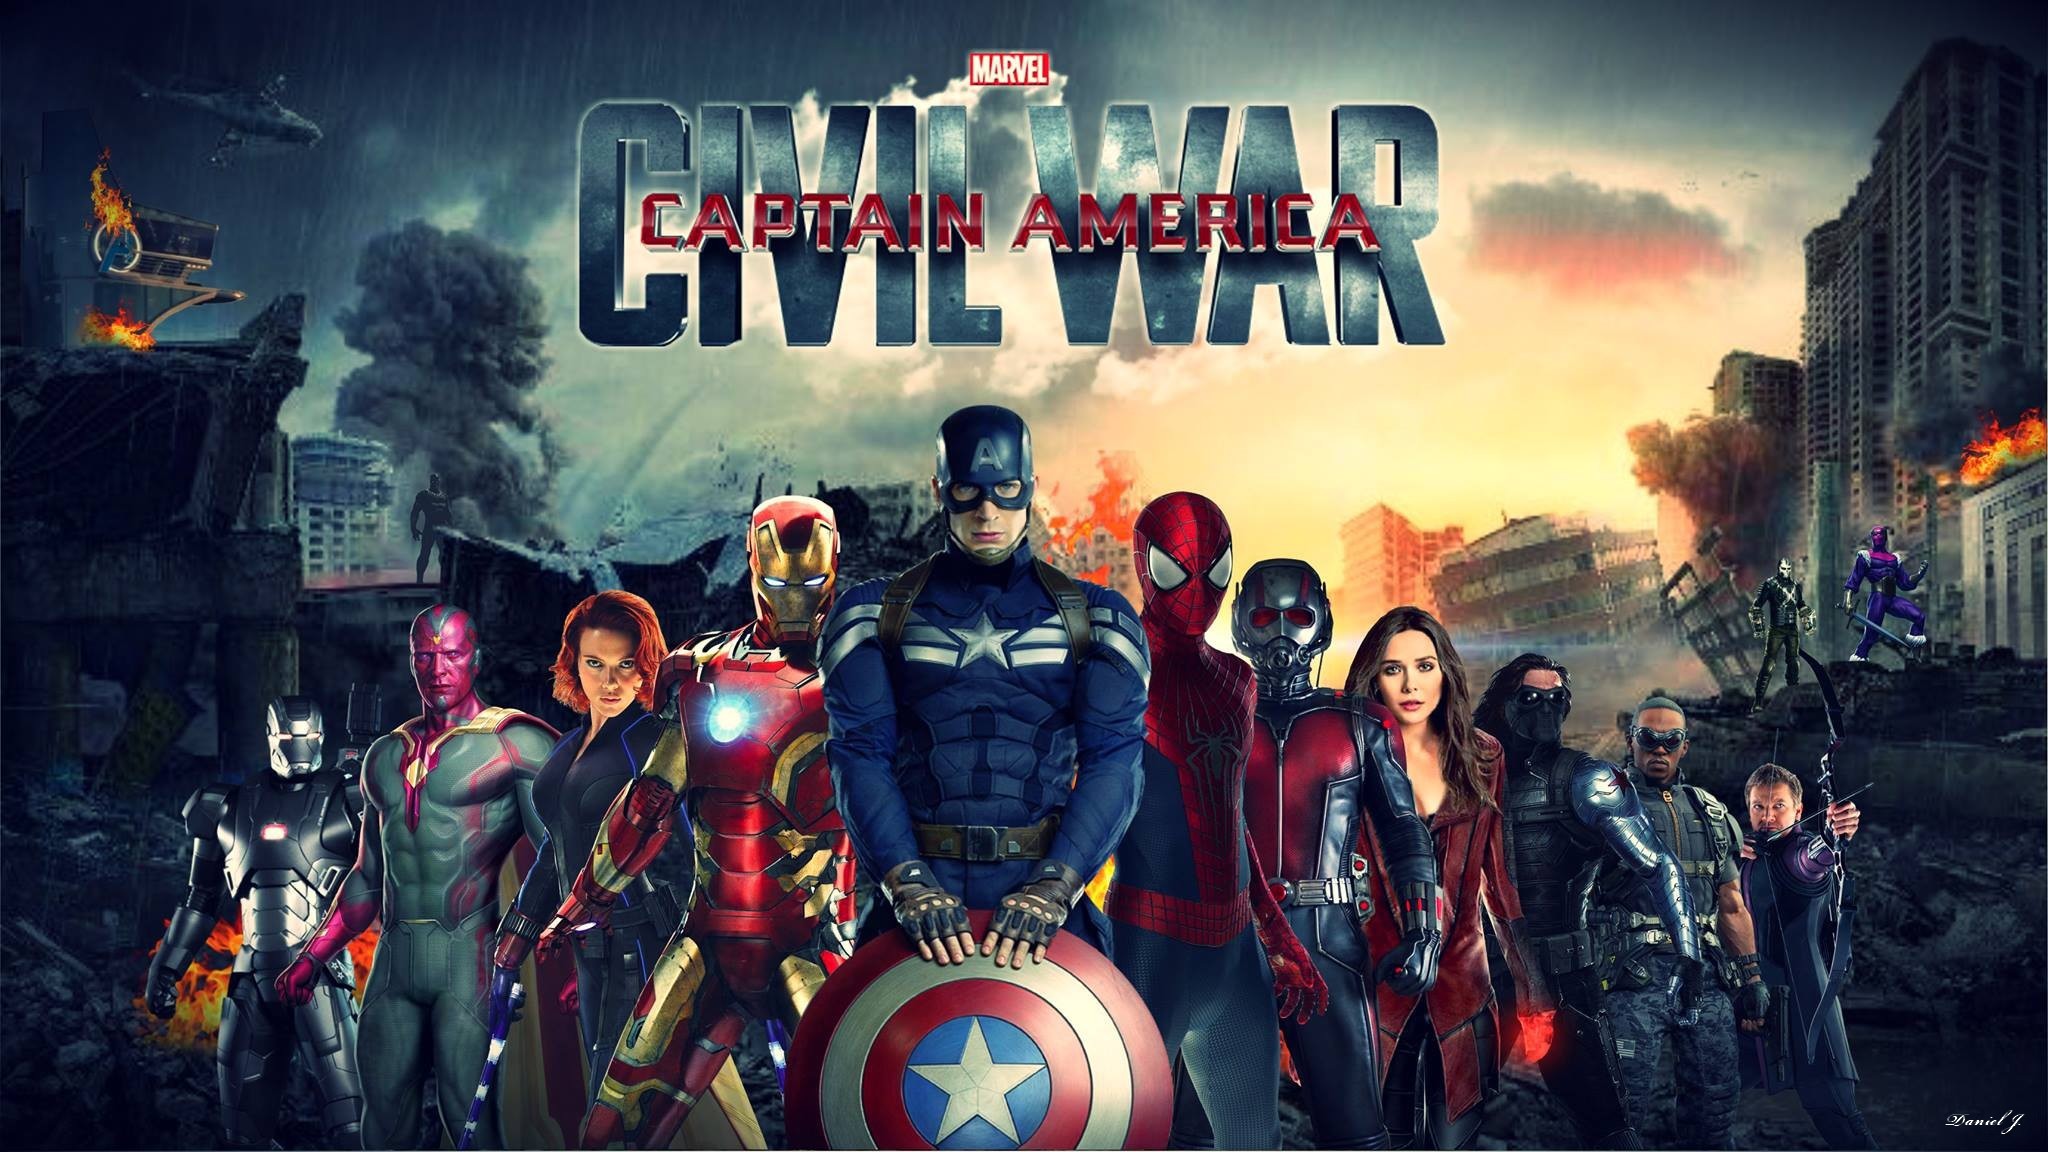 2048x1152 0 Captain America Hd Wallpaper Captain America Wallpaper Hd 0 Captain America  Wallpaper Hd Civil War ...